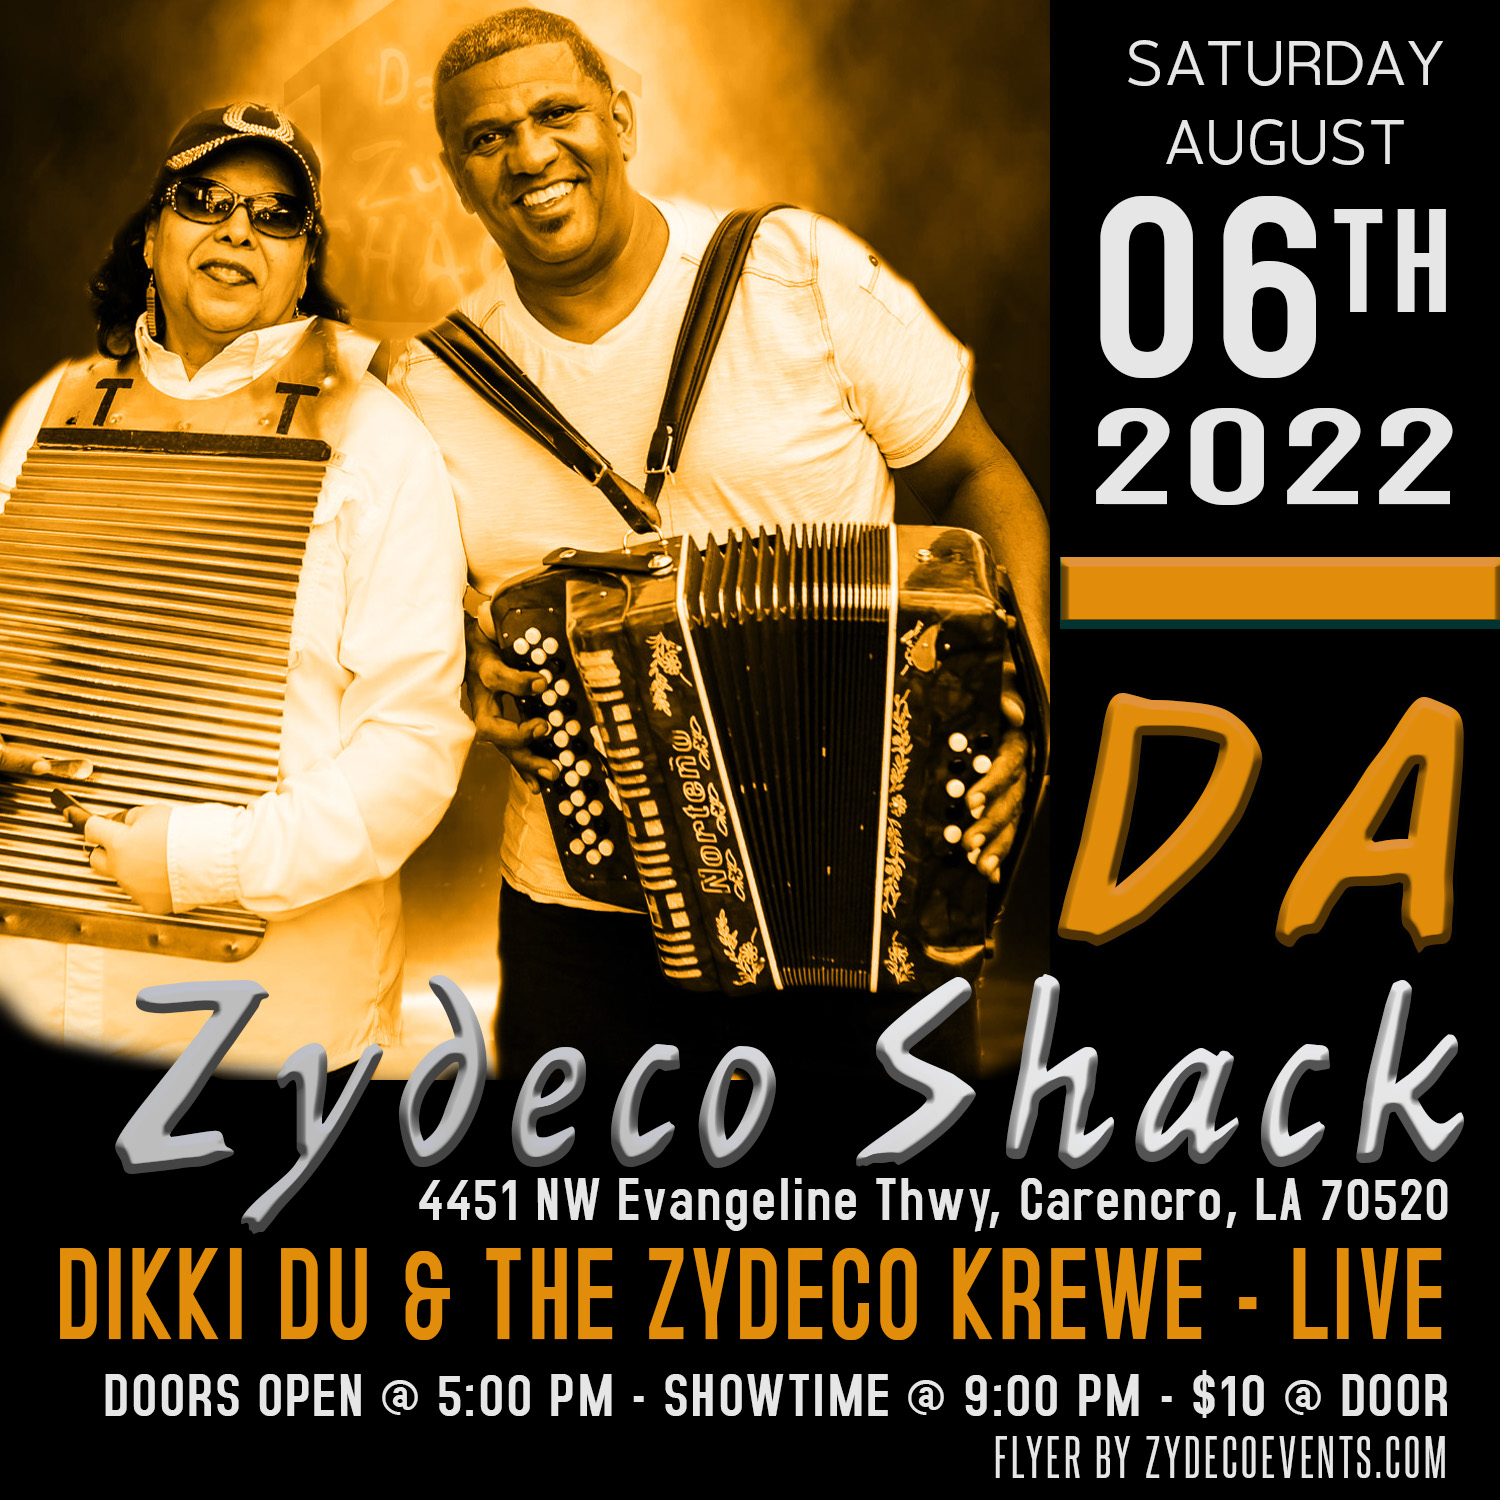 Dikki Du & the Zydeco Krewe - LIVE @ Da Zydeco Shack